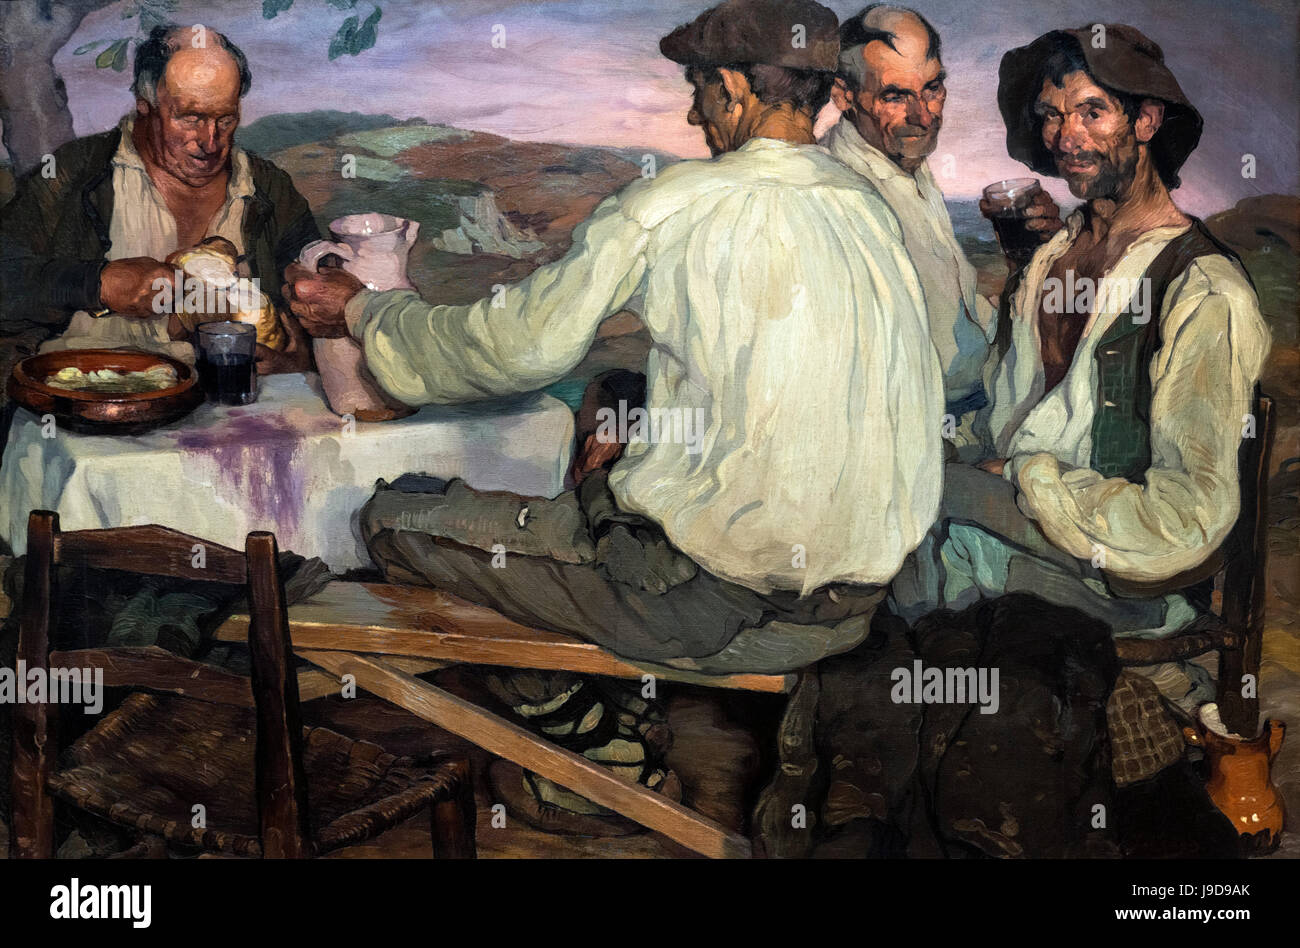 Spanish Farmers by Ignacio Zuloaga (1870-1945), oil on canvas, 1905 Stock Photo